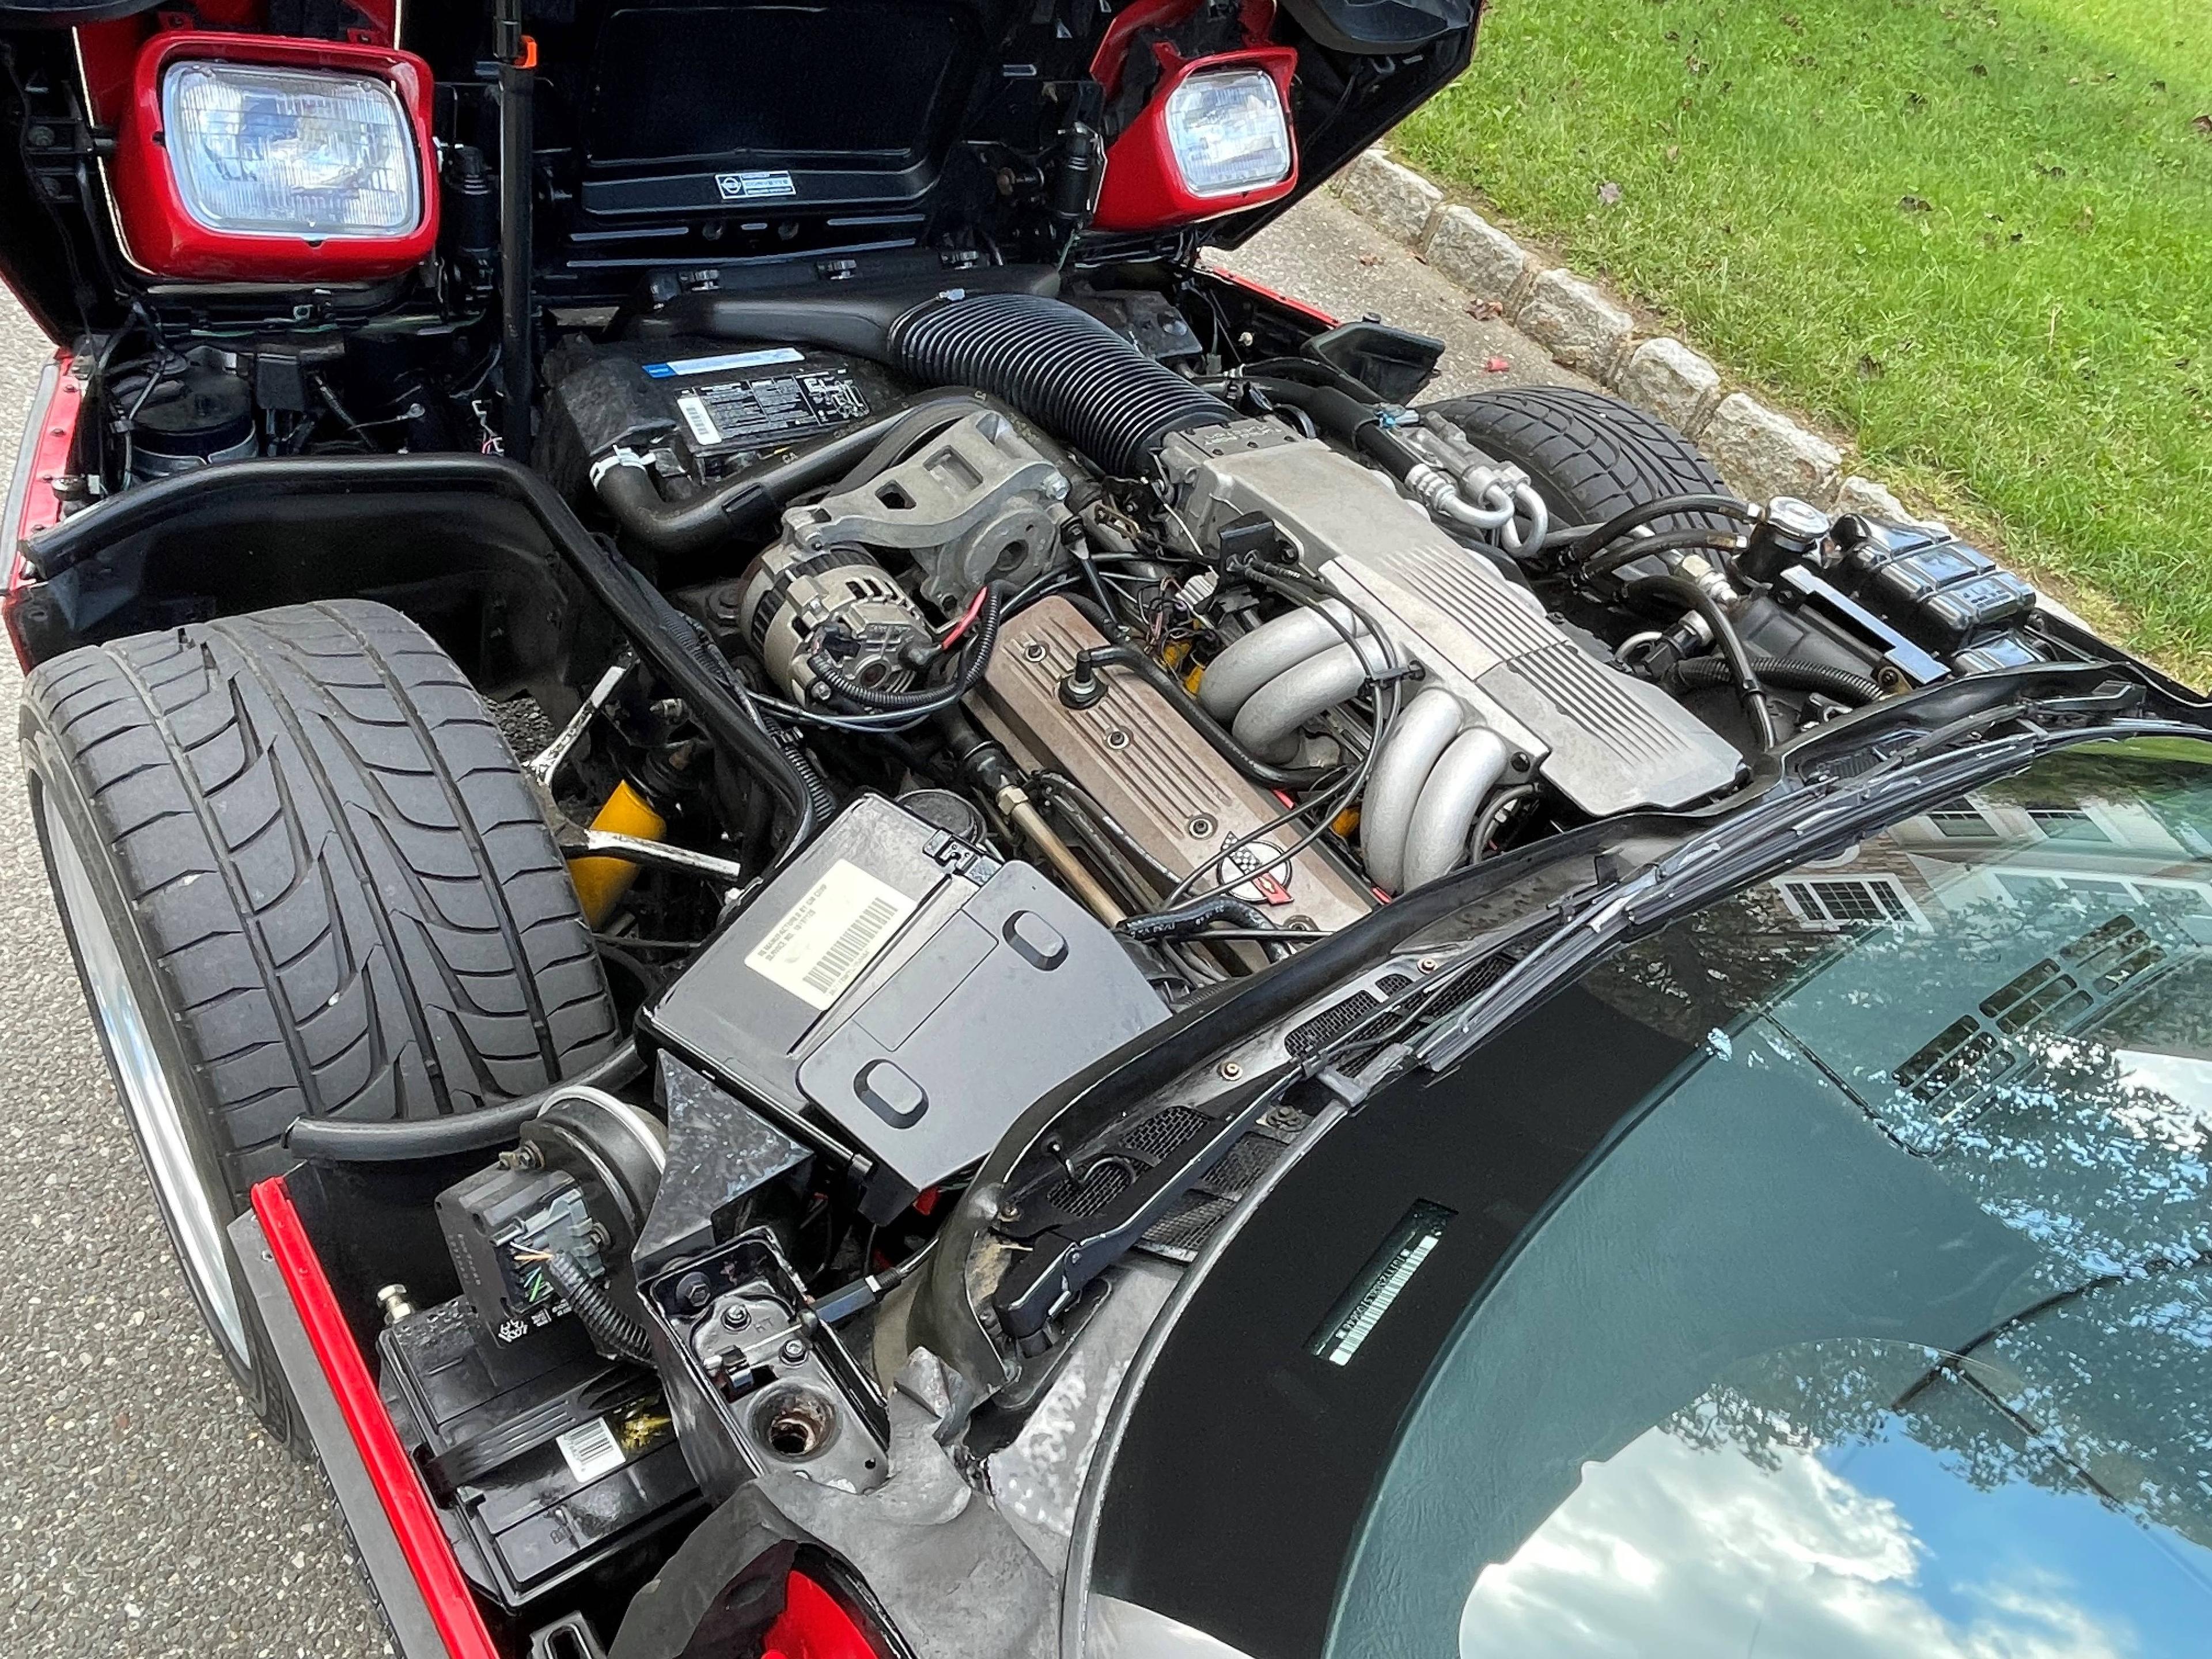 1990 Chevrolet Corvette Coupe. 5.7L L98 V8 Engine. Automatic Transmission.